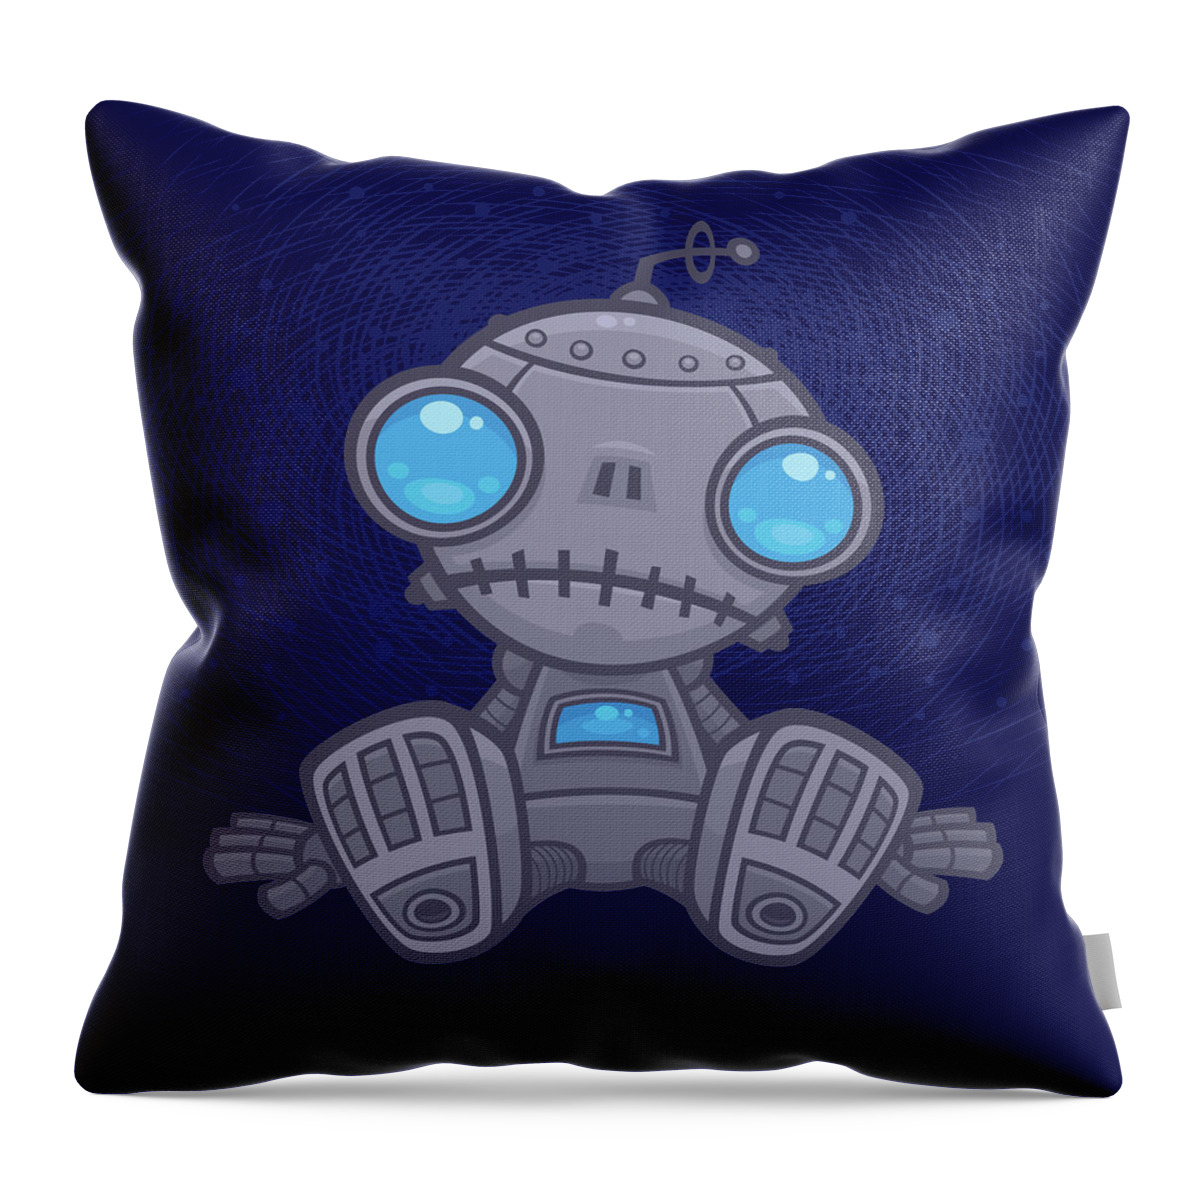 Robot Throw Pillow featuring the digital art Sad Robot by John Schwegel